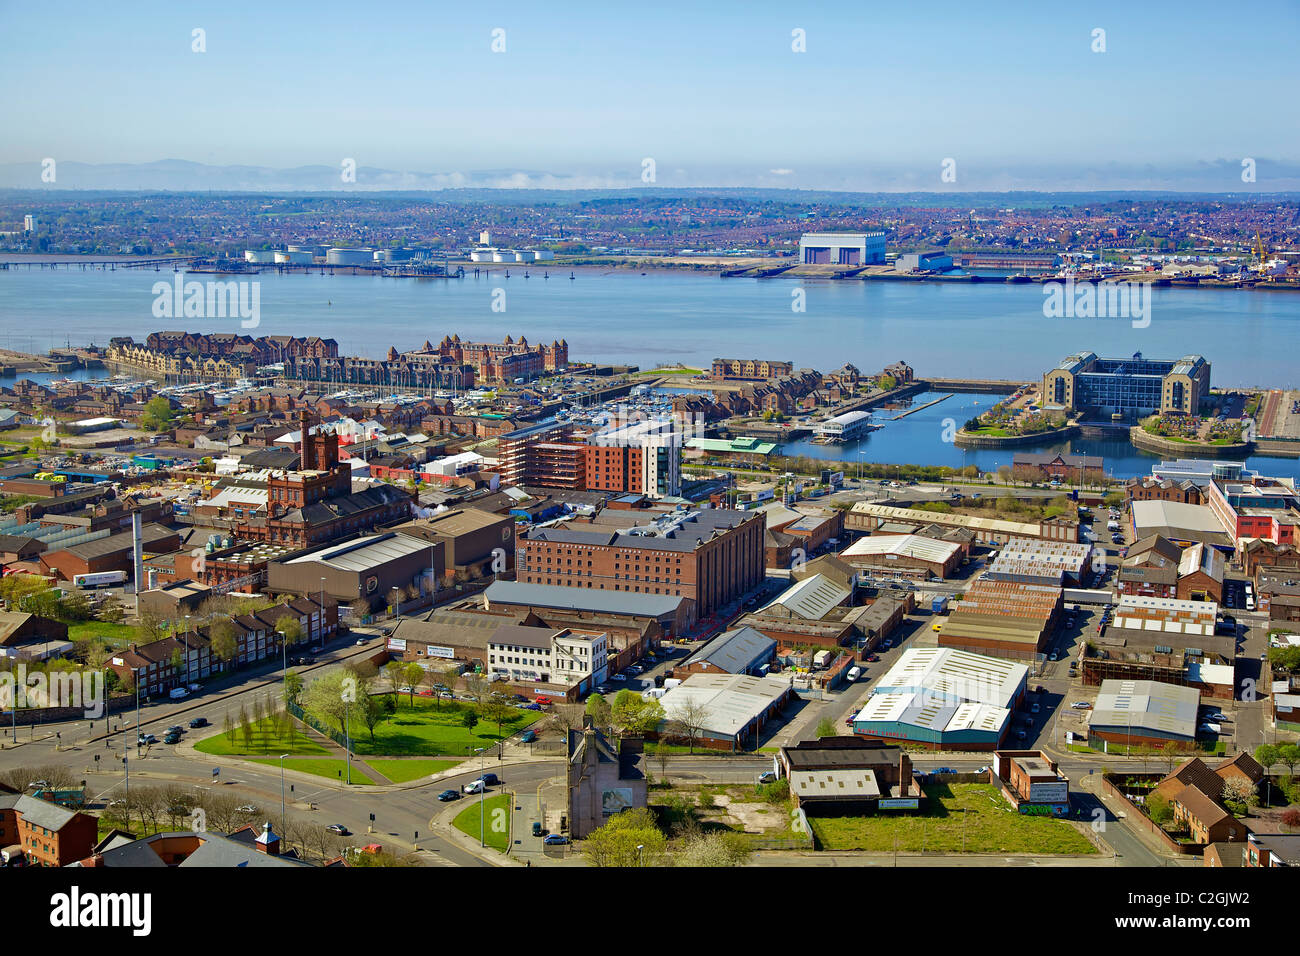 Una veduta aerea del centro città di Liverpool cercando attraverso la marina verso il Camel Lairds. Foto Stock